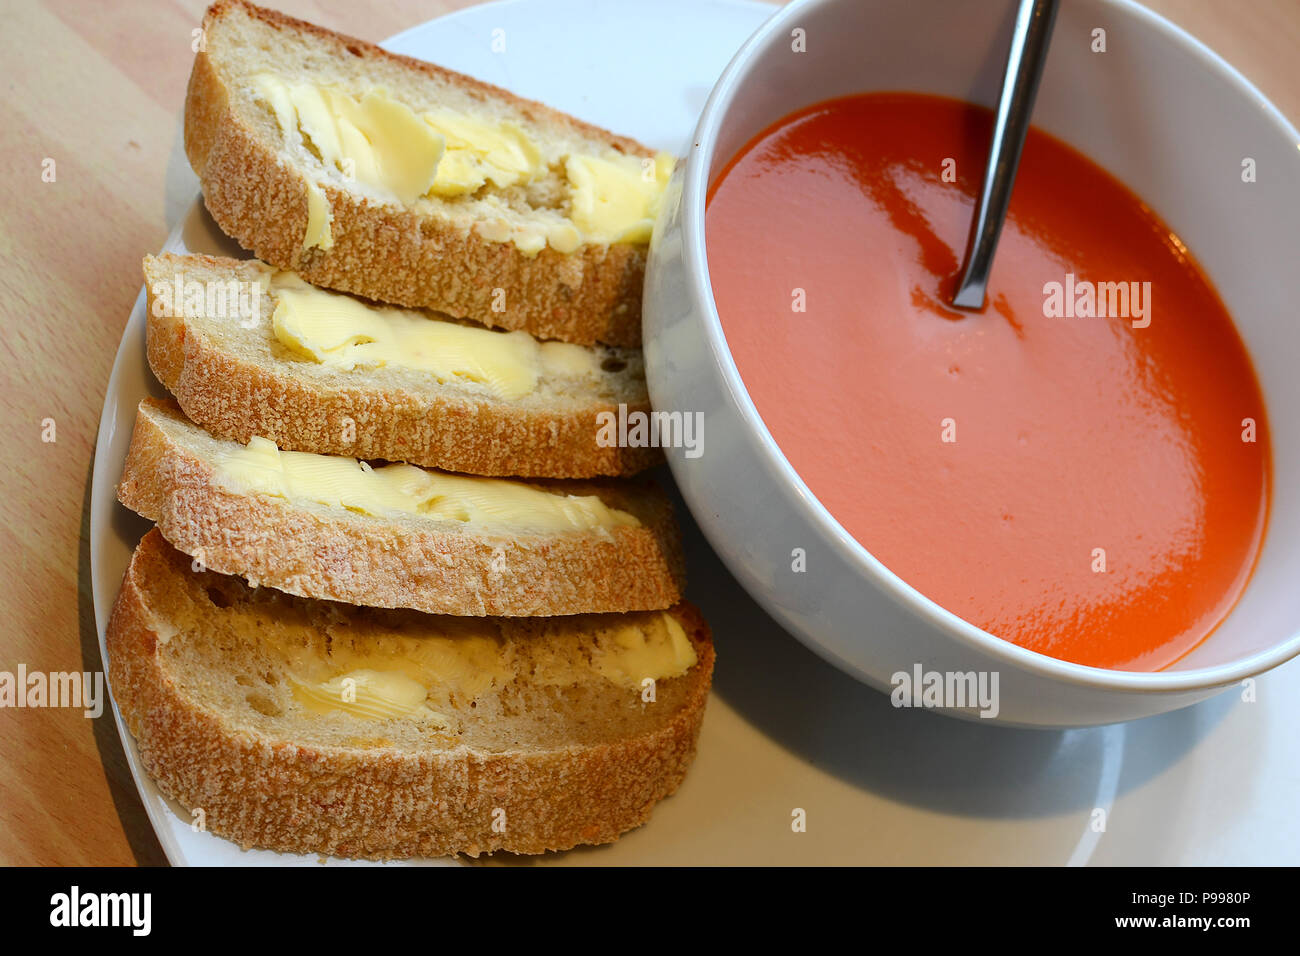 Soupe du jour, soupe de tomate avec du pain et du beurre Banque D'Images